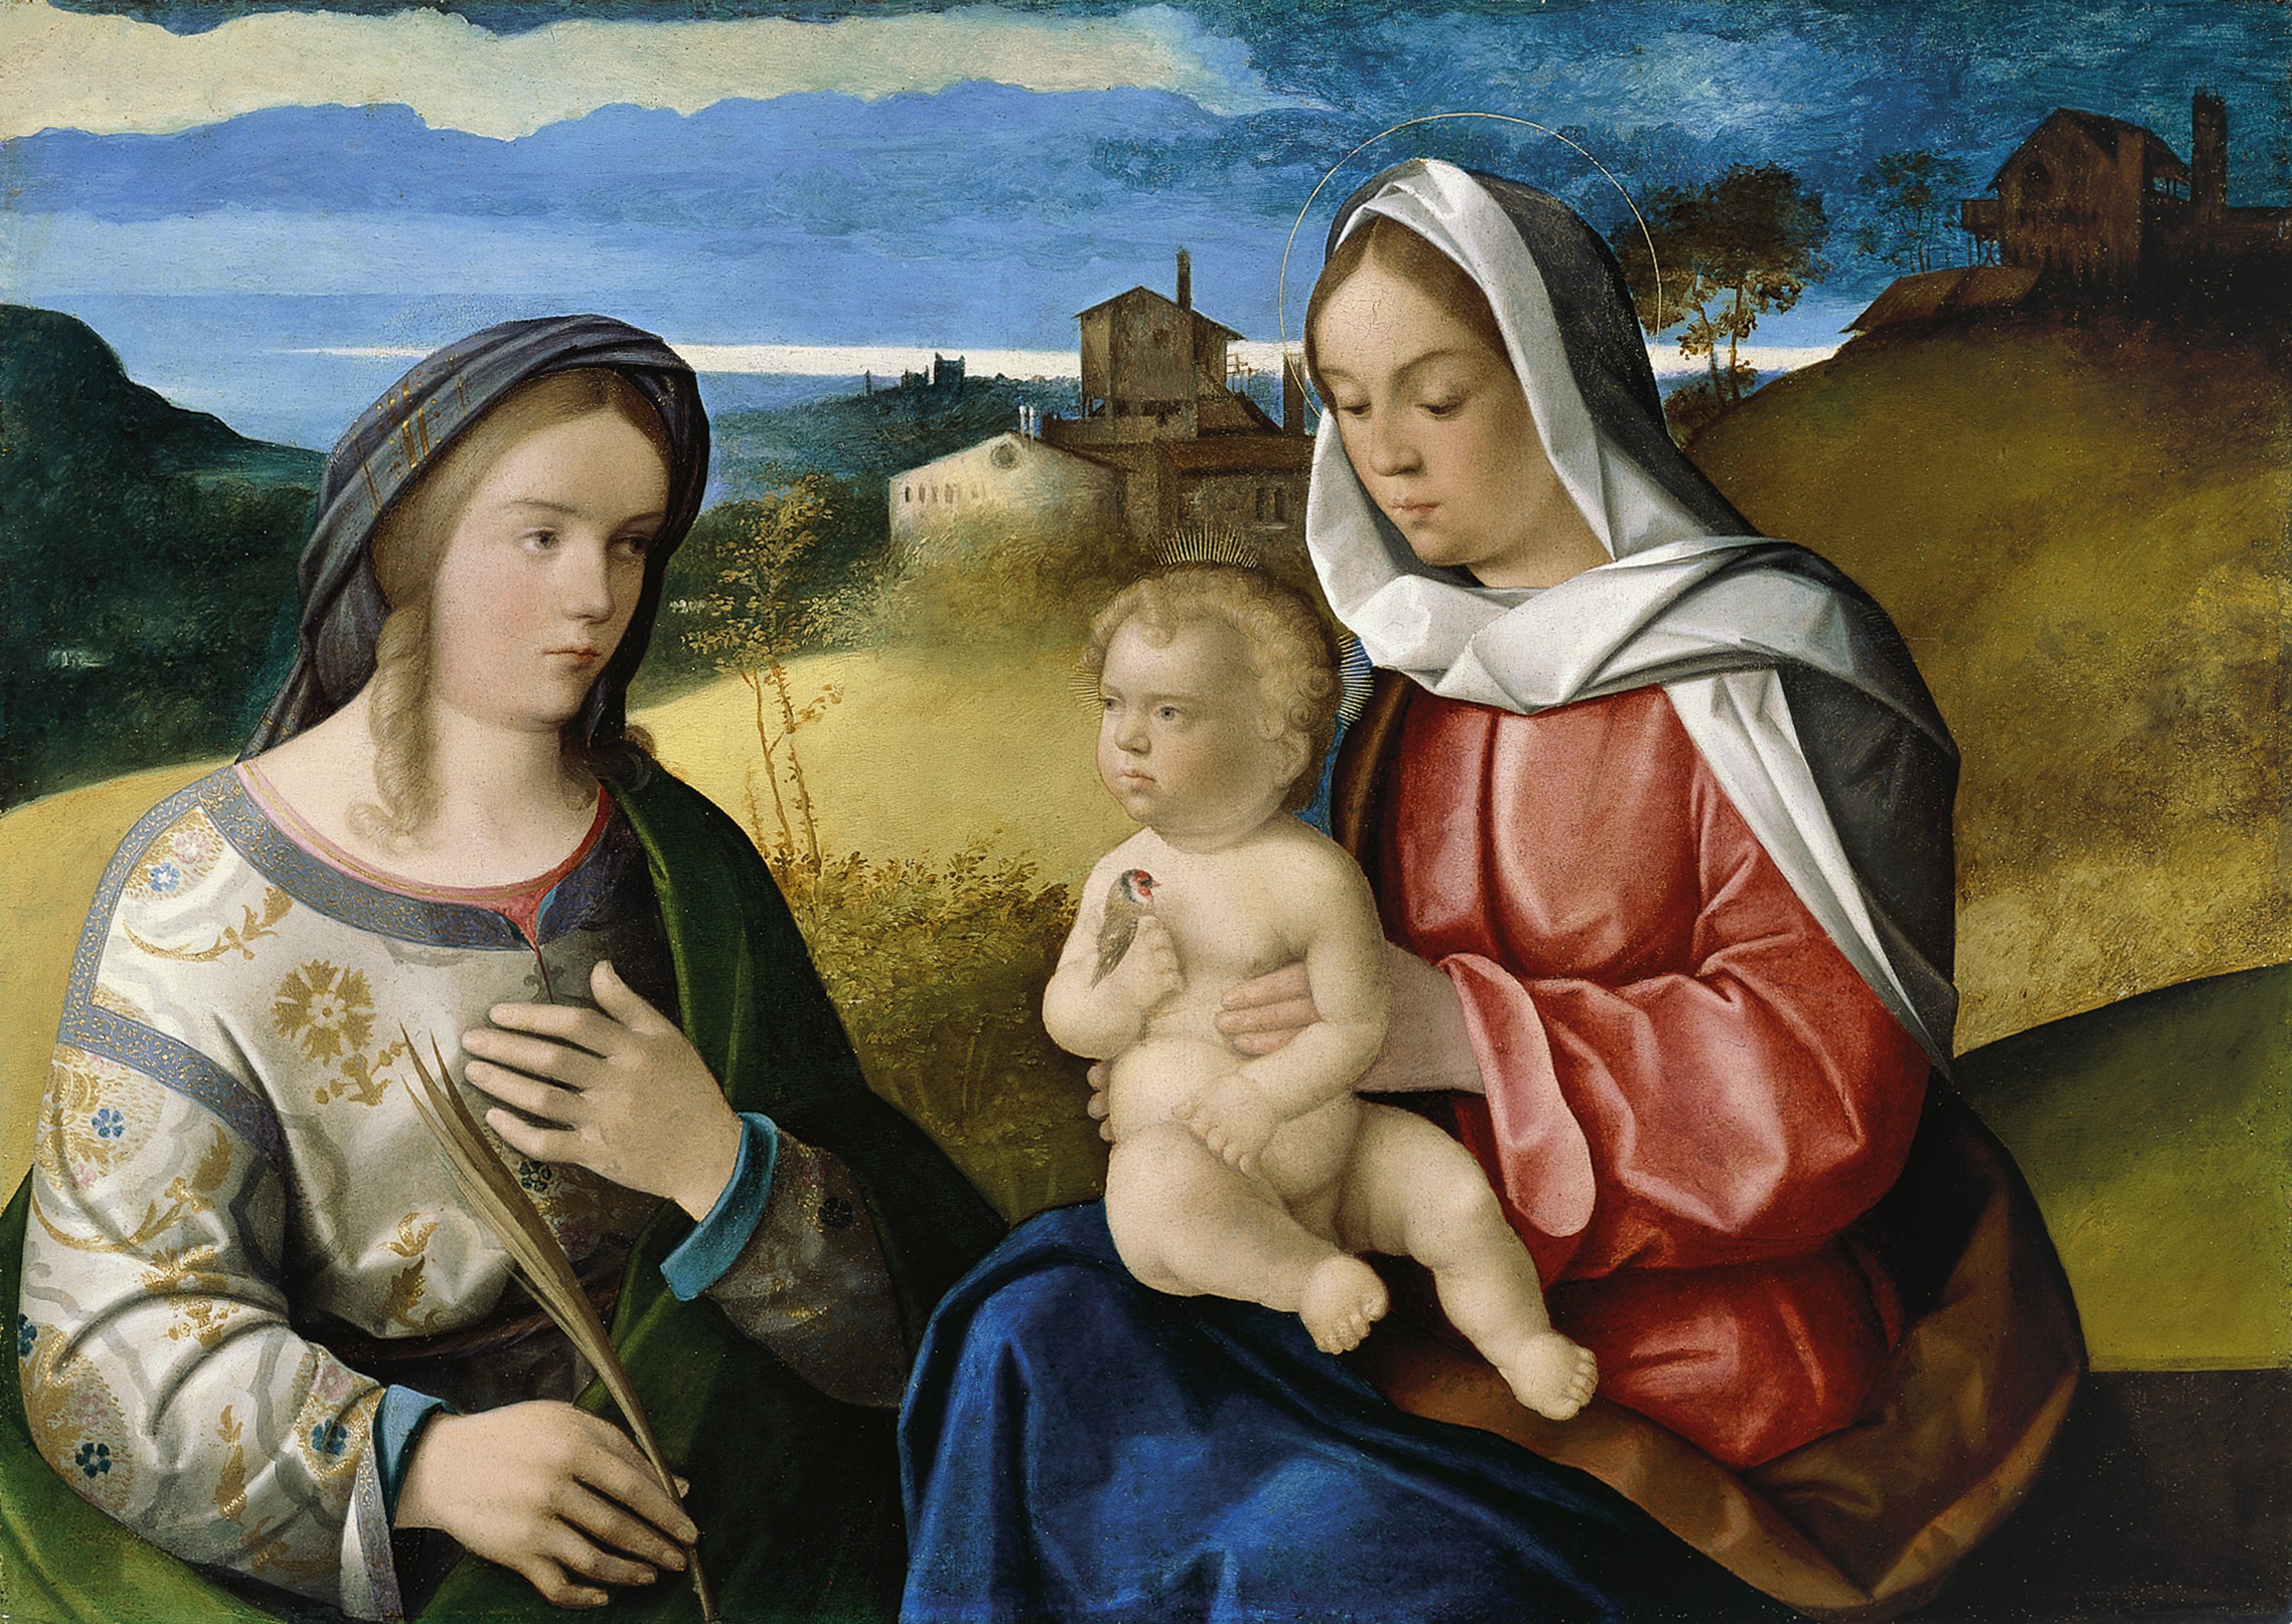 The Virgin and Child with Saint Agnes in a Landscape. La Virgen y el Niño, con santa Inés, en un paisaje, c. 1520-25